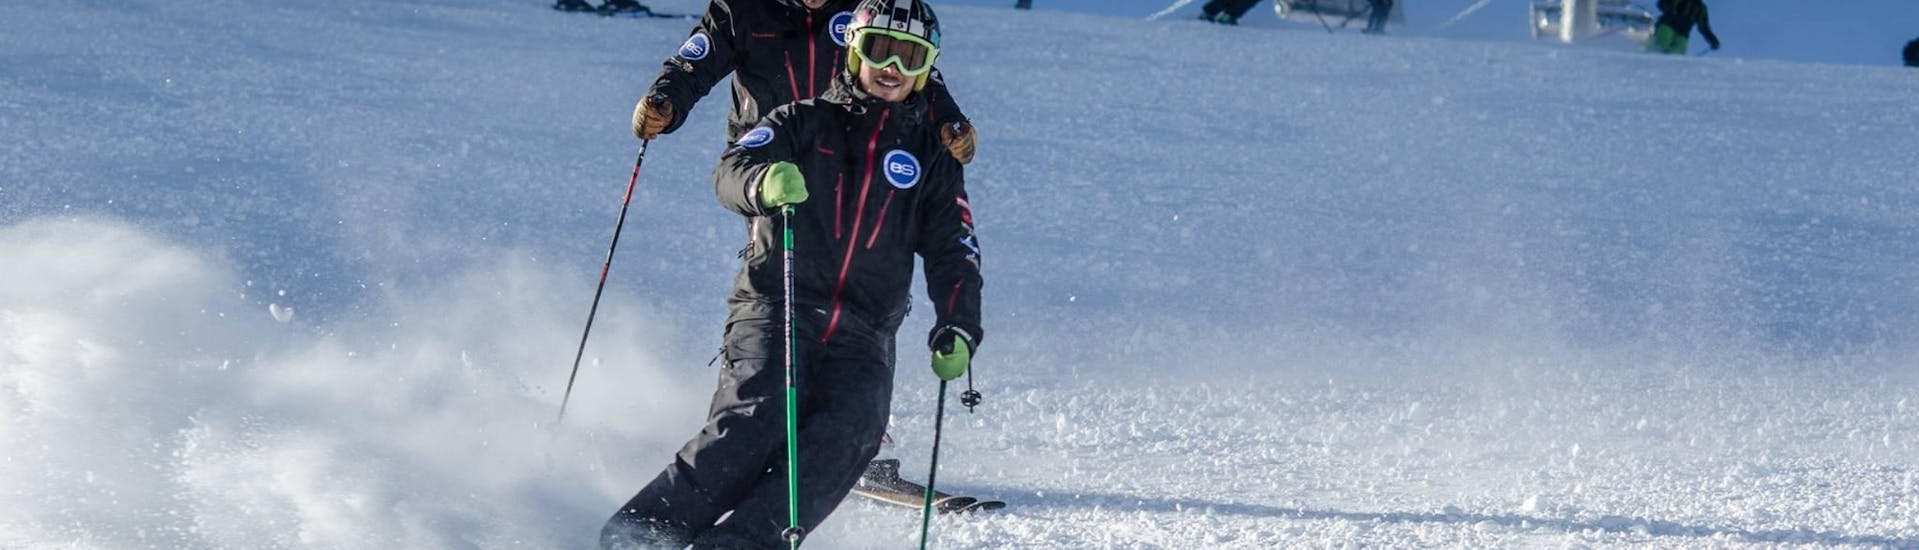 Clases de esquí para adolescentes "Freeski" (11-17 años) para esquiadores avanzados.